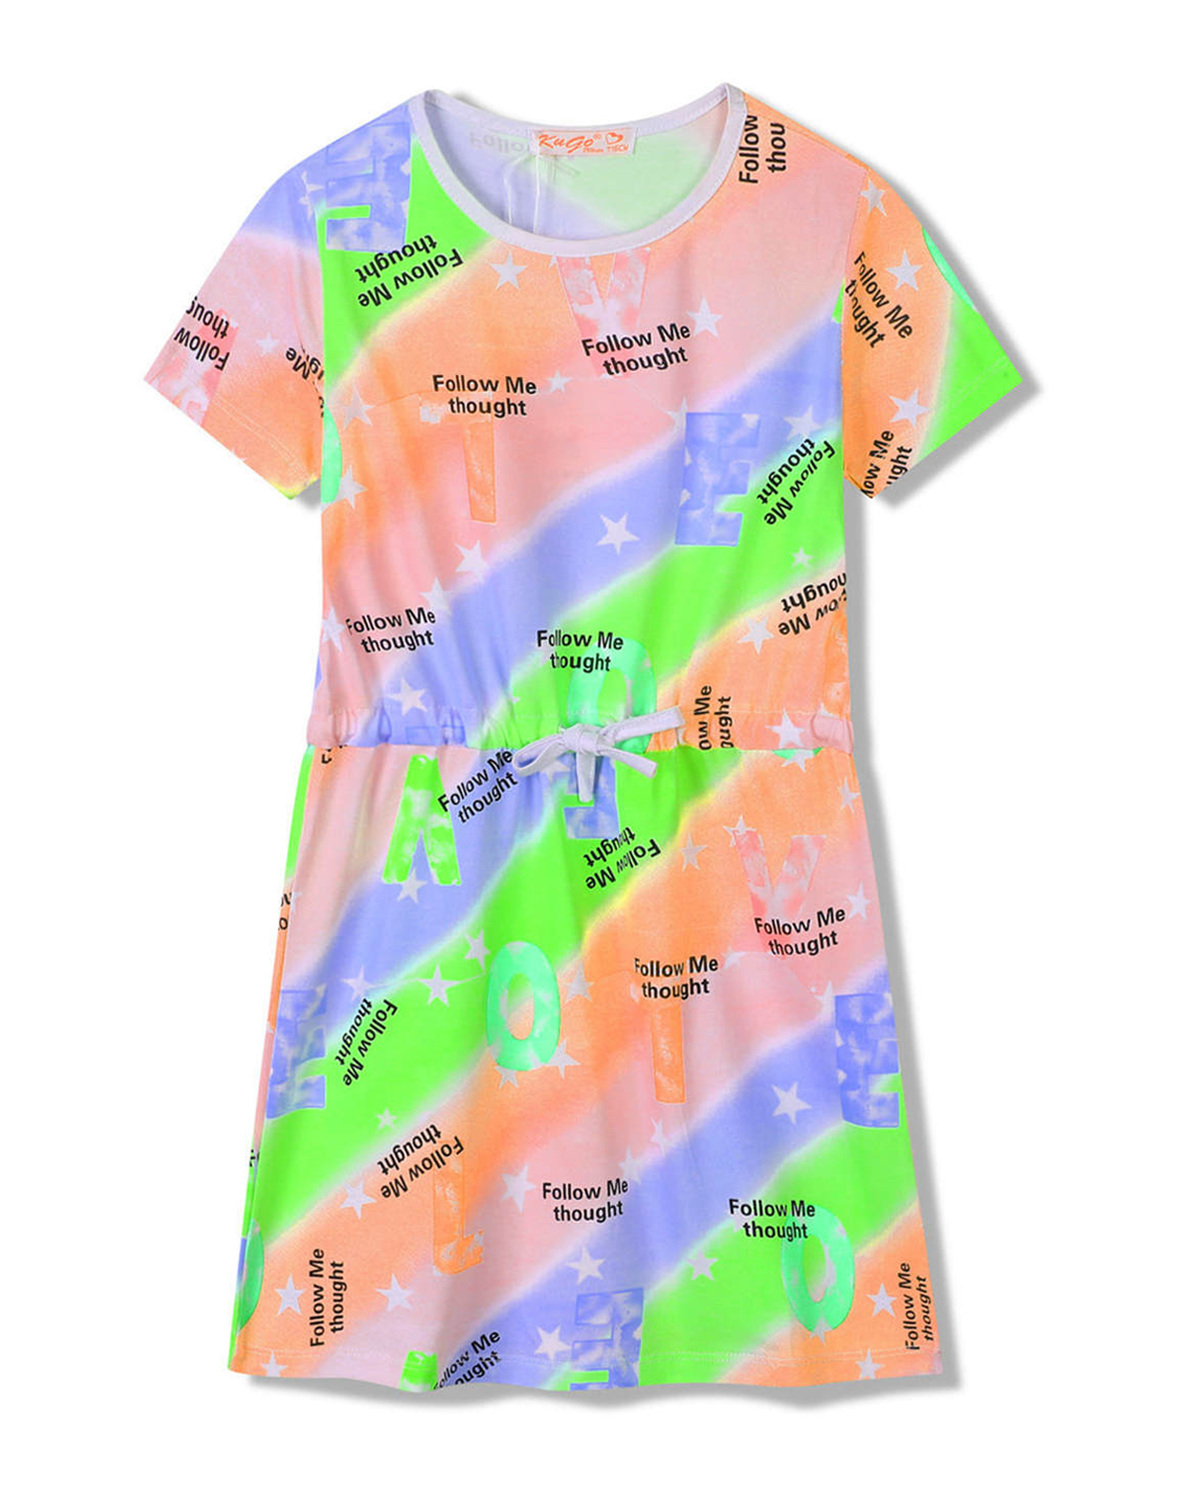 Dívčí šaty - KUGO SH3518, mix barev / bílý lem Barva: Mix barev, Velikost: 146